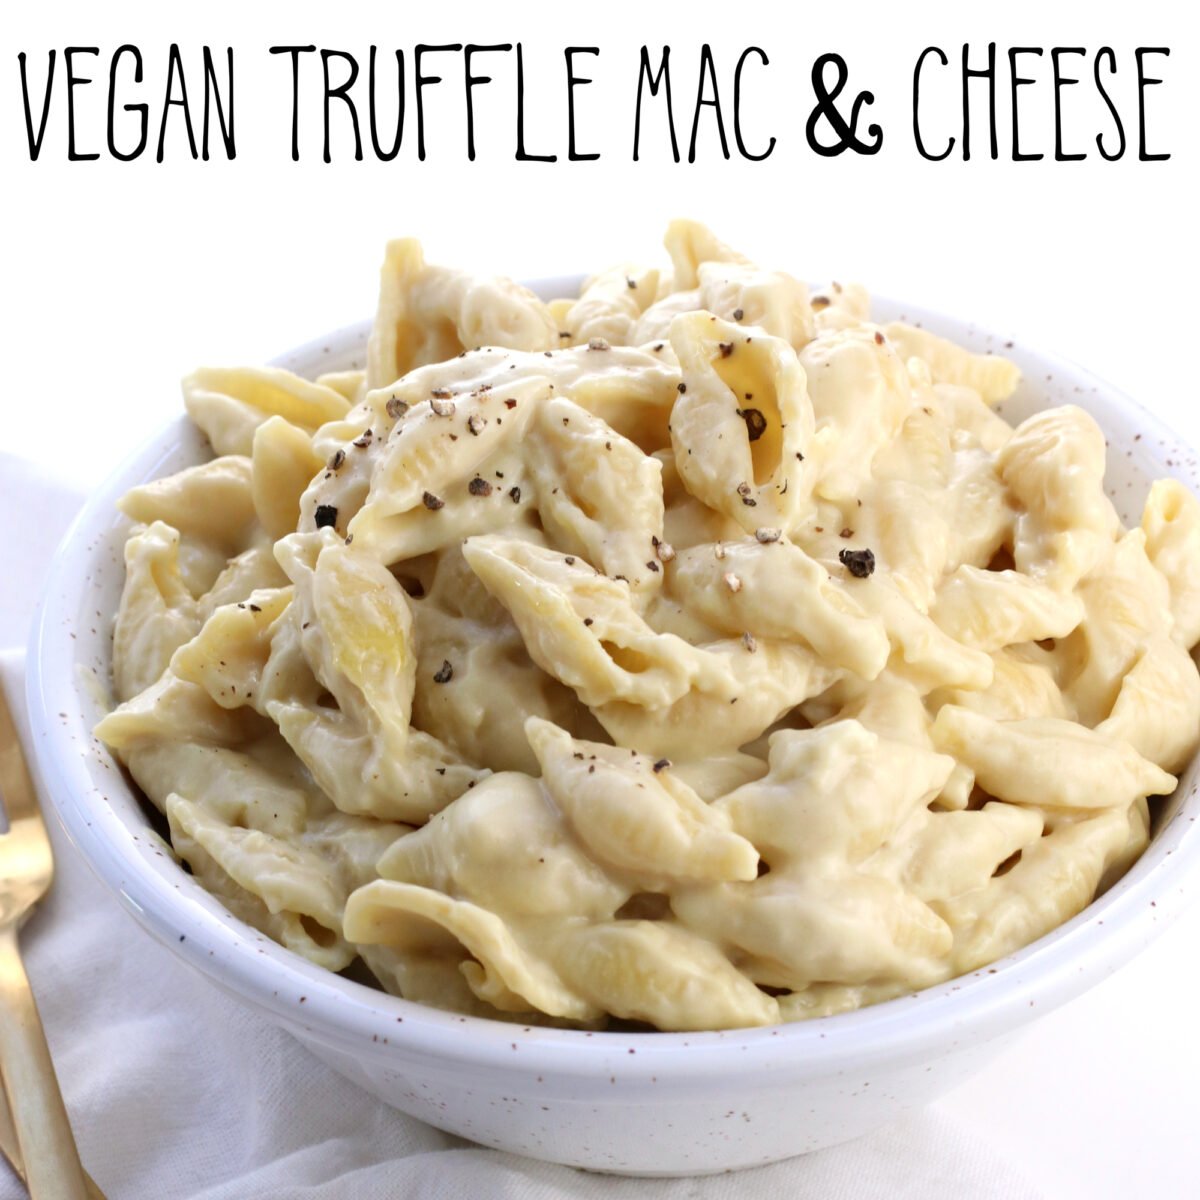 Vegan Truffle Mac & Cheese